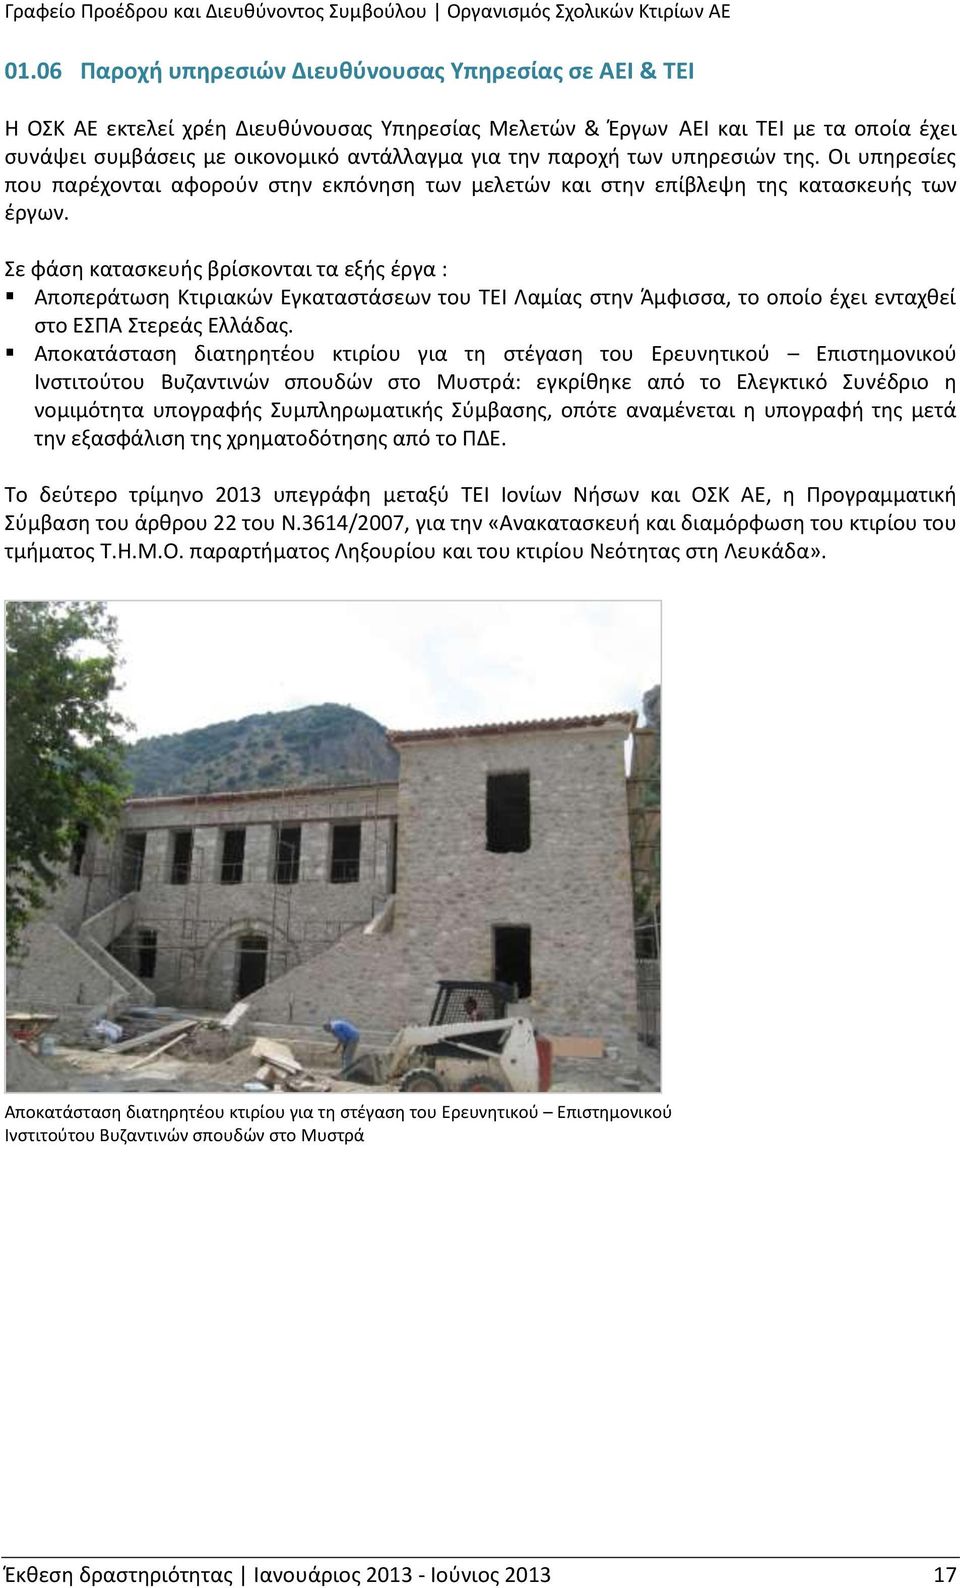 Σε φάση κατασκευής βρίσκονται τα εξής έργα : Αποπεράτωση Κτιριακών Εγκαταστάσεων του ΤΕΙ Λαμίας στην Άμφισσα, το οποίο έχει ενταχθεί στο ΕΣΠΑ Στερεάς Ελλάδας.